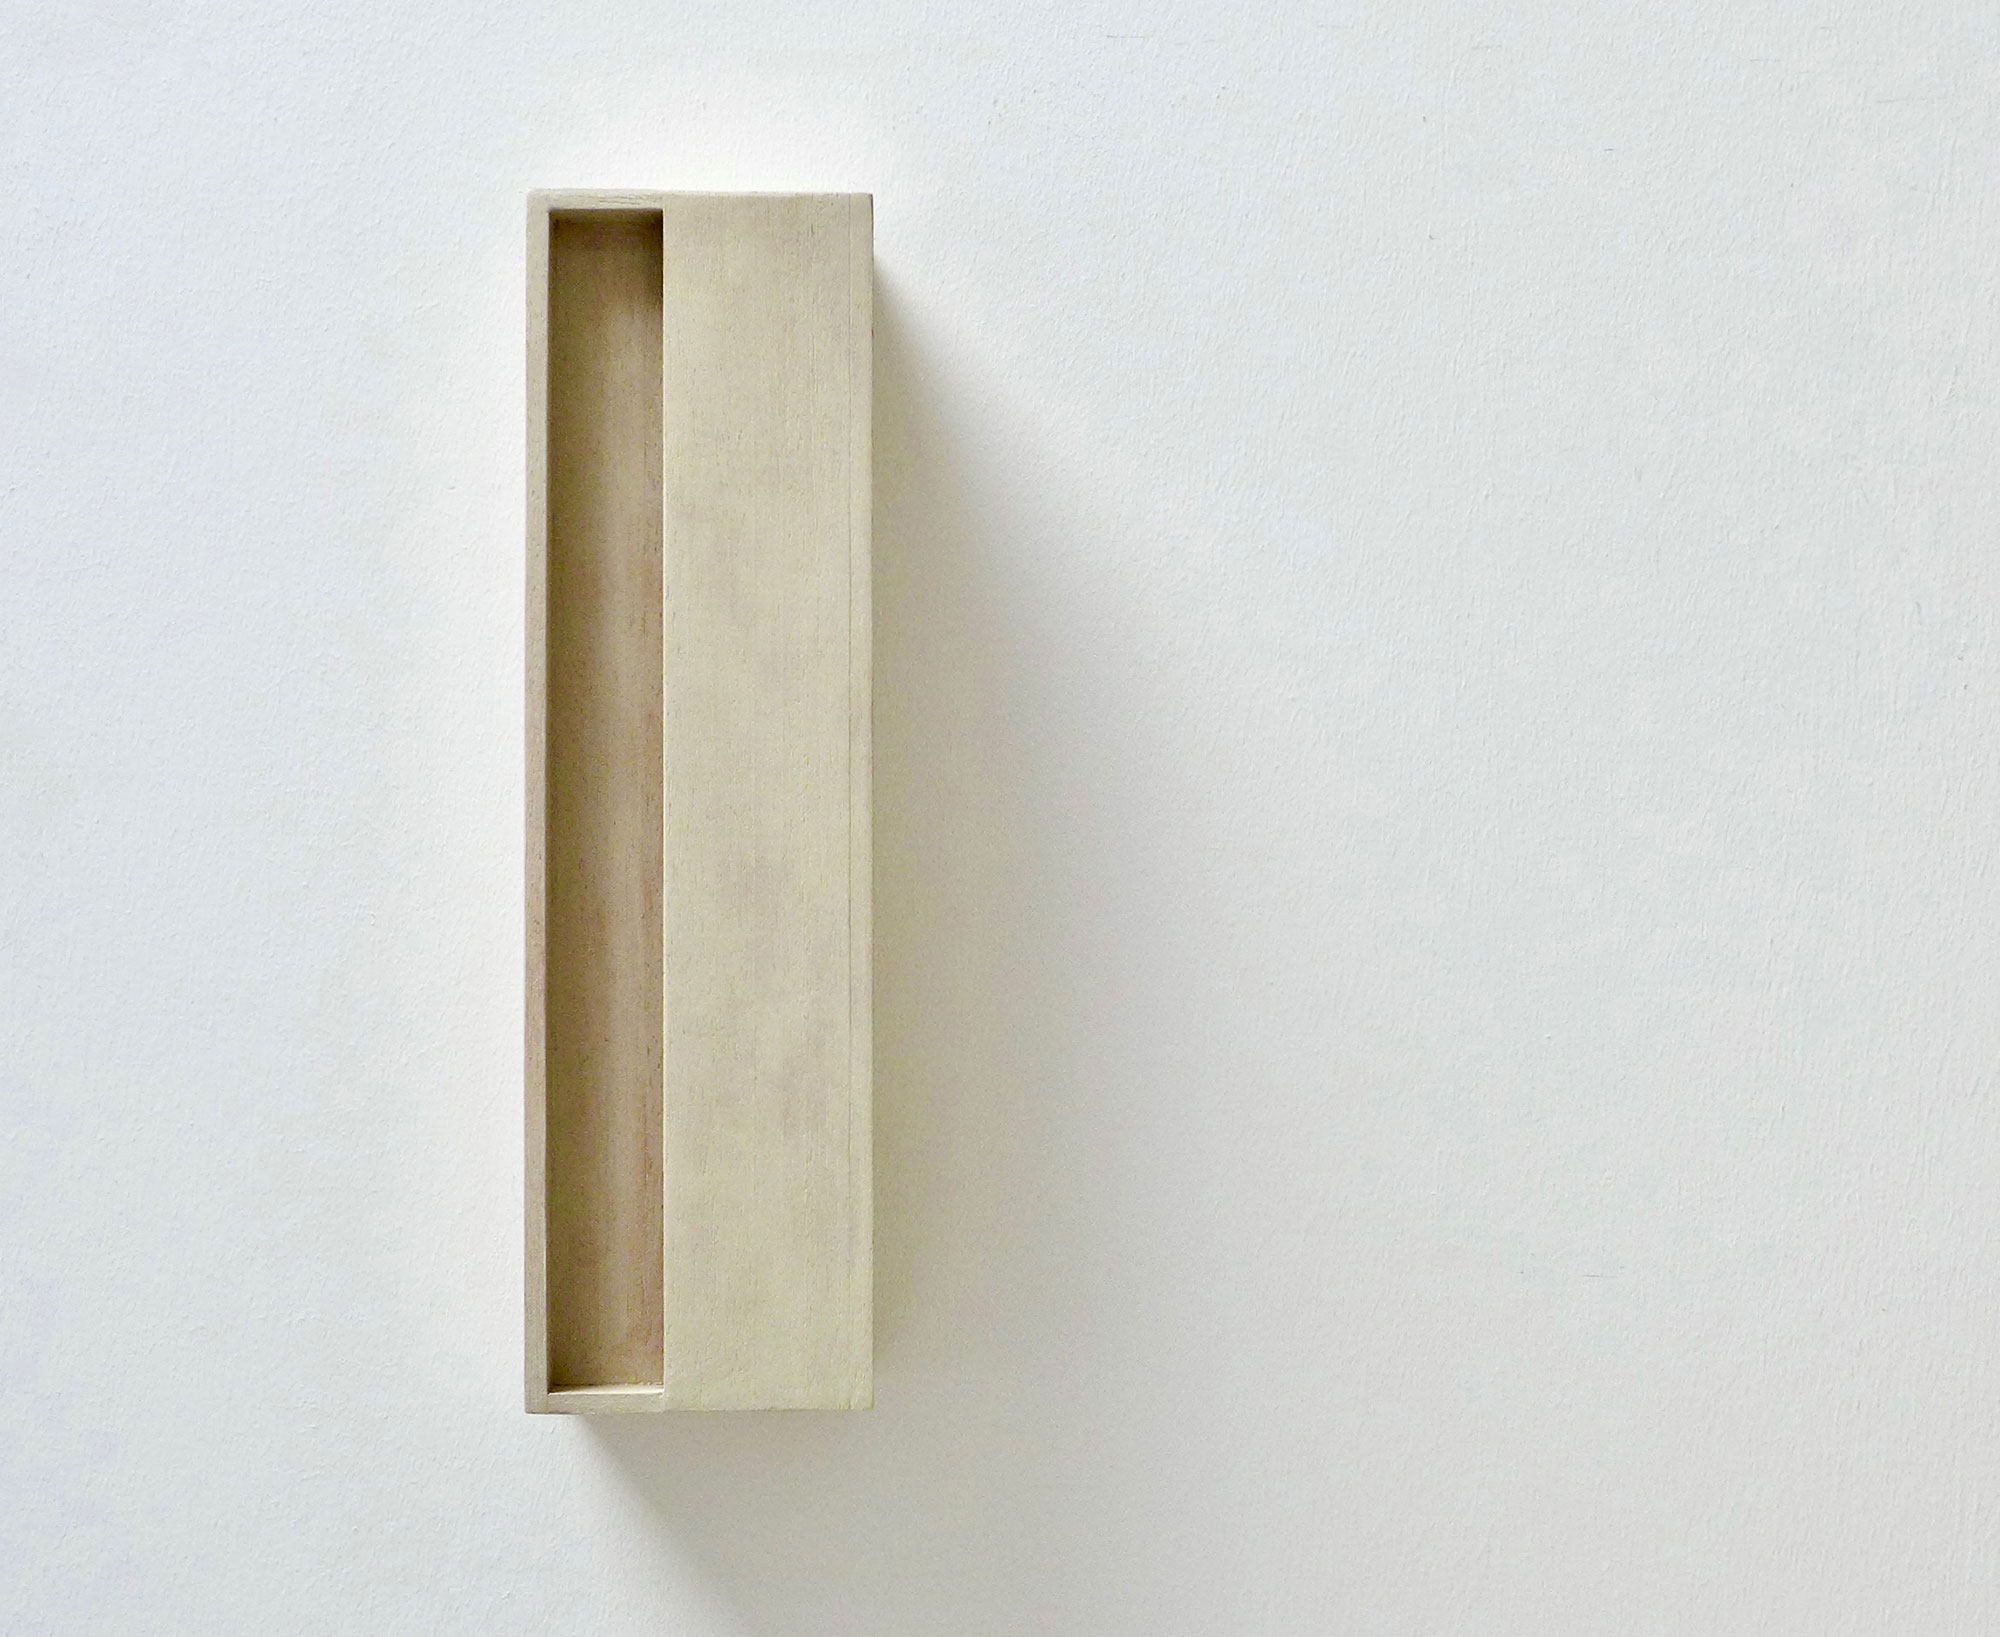 Kenneth Dingwall, Raw Titanium XII, 2009, acrylic on basswood, 30.3cm x 8.3cm x 7.1cm